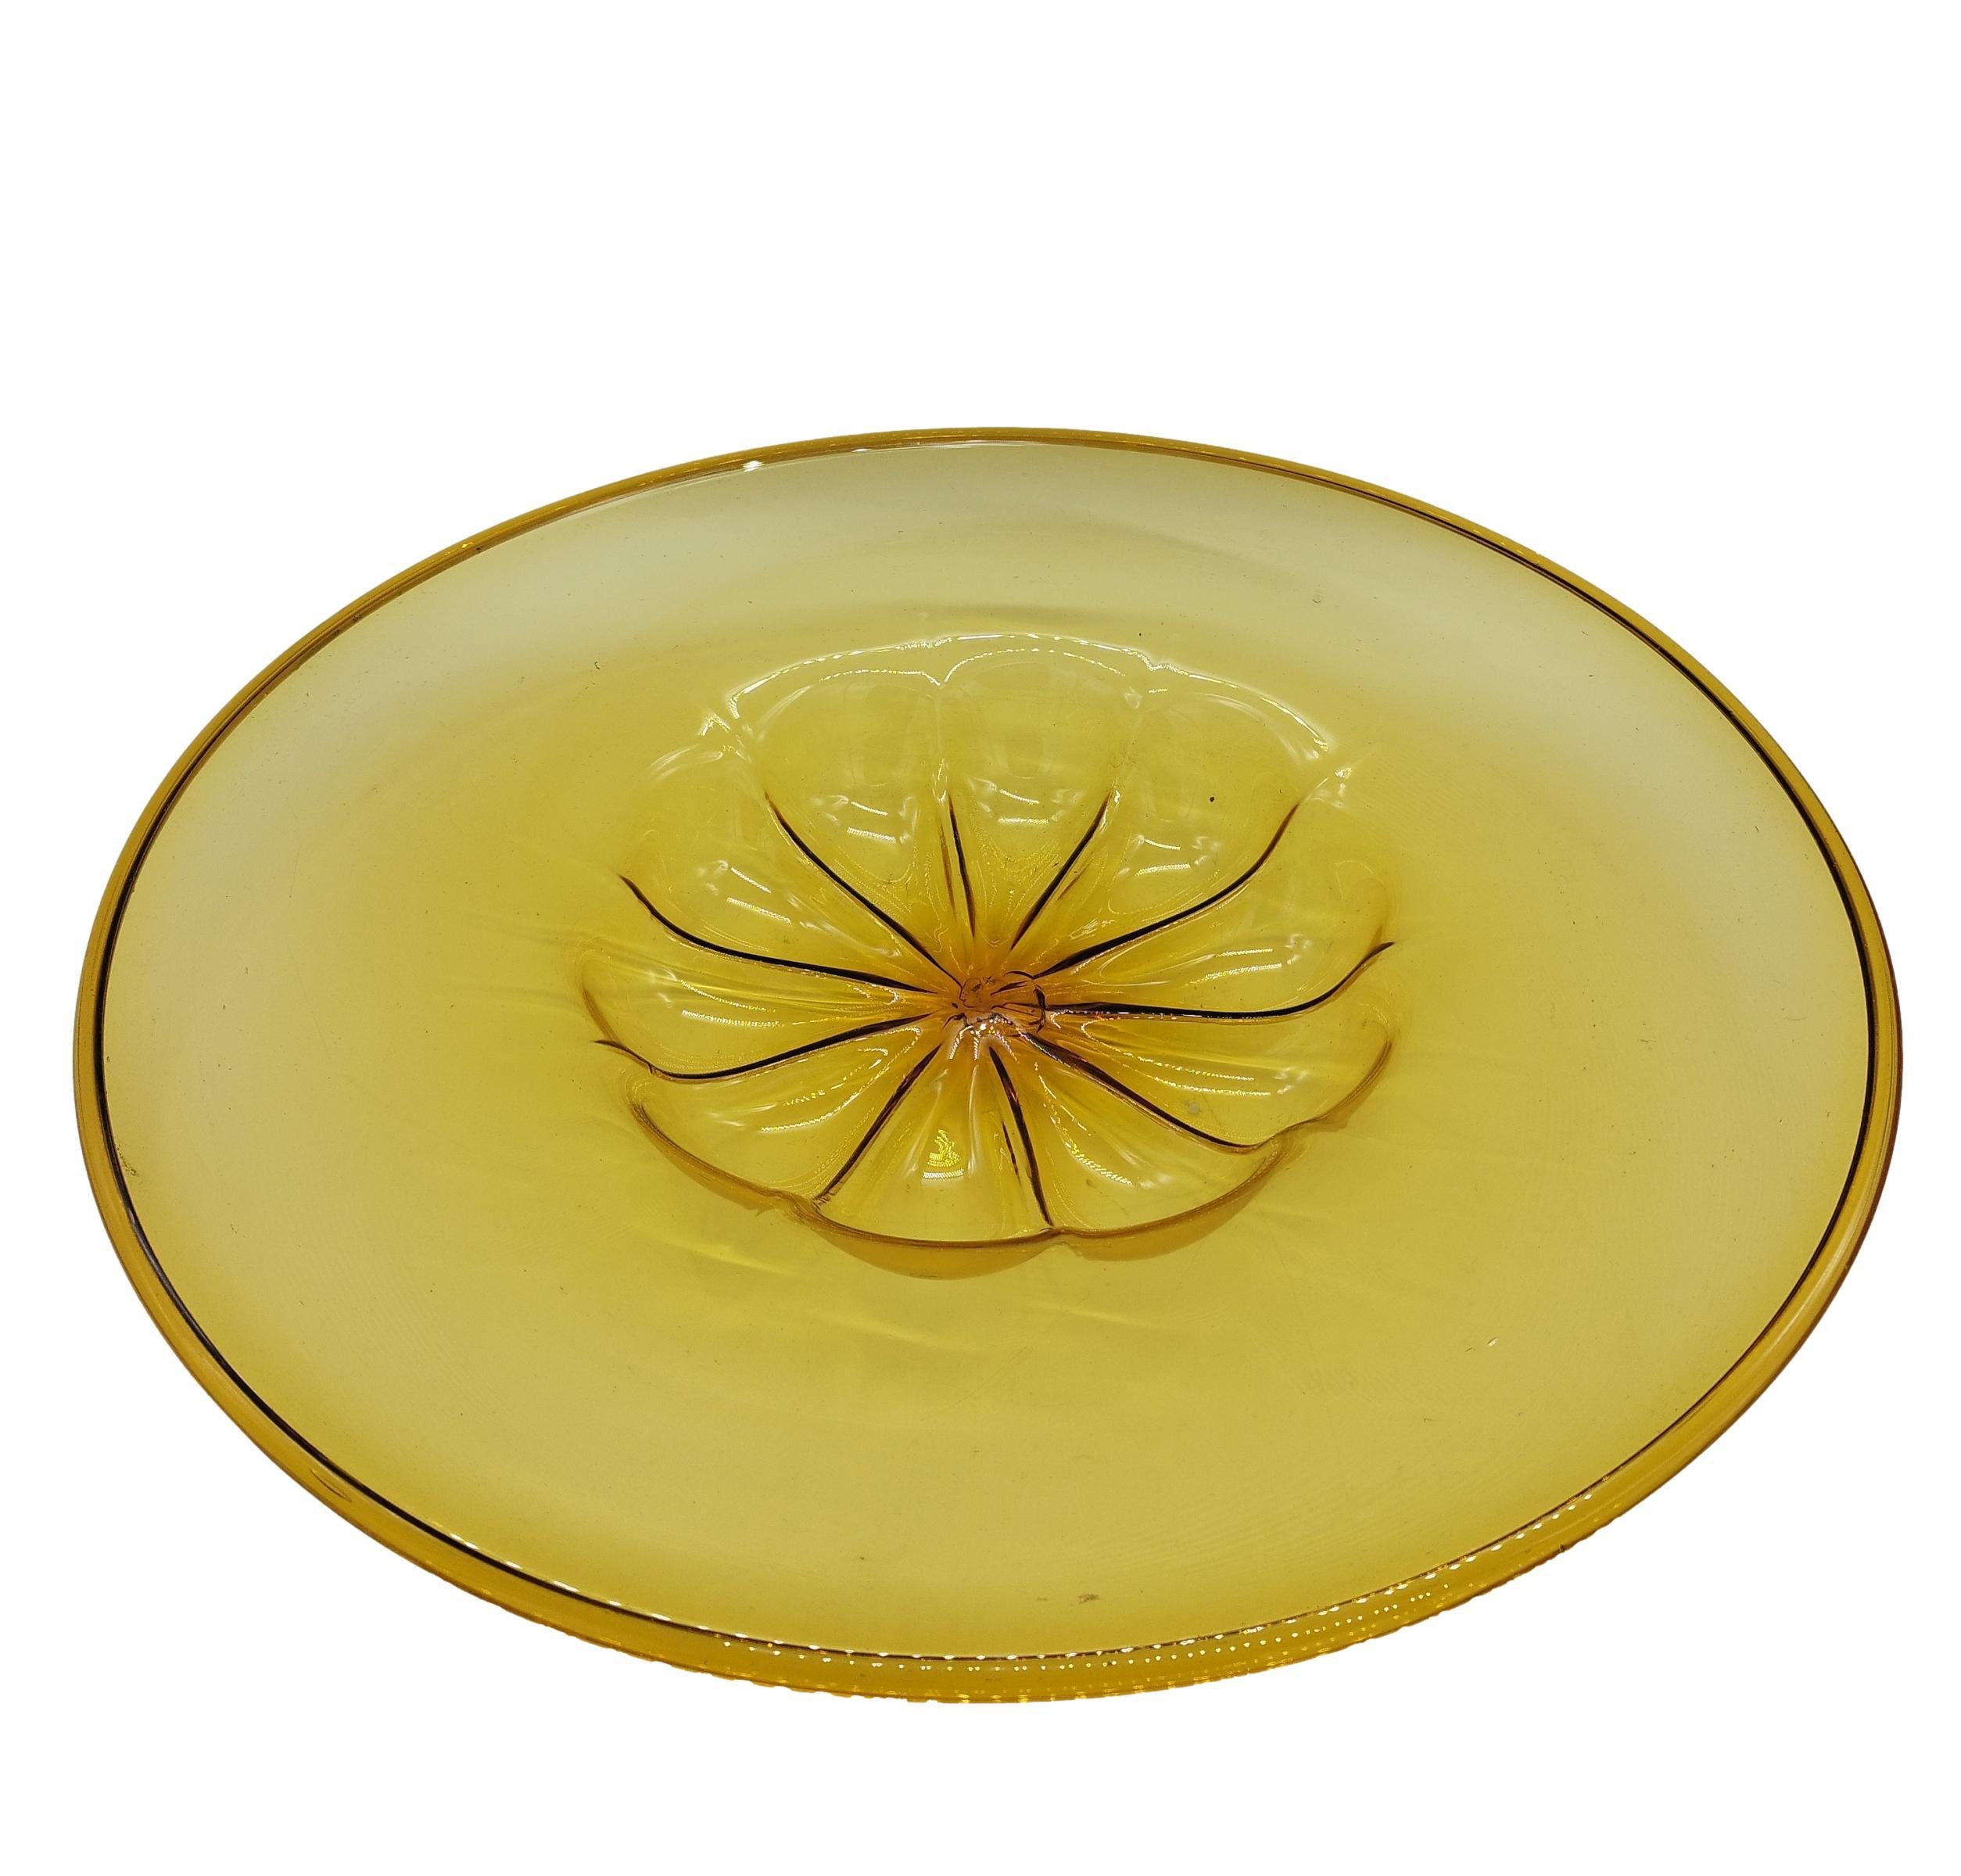 Grand plat en verre soufflé en verre jaune transparent, conçu par Vittorio Zecchin et produit par Venini, Murano Venezia. Le plat a été produit en plusieurs tailles, il s'agit ici de la plus grande version, très rare.